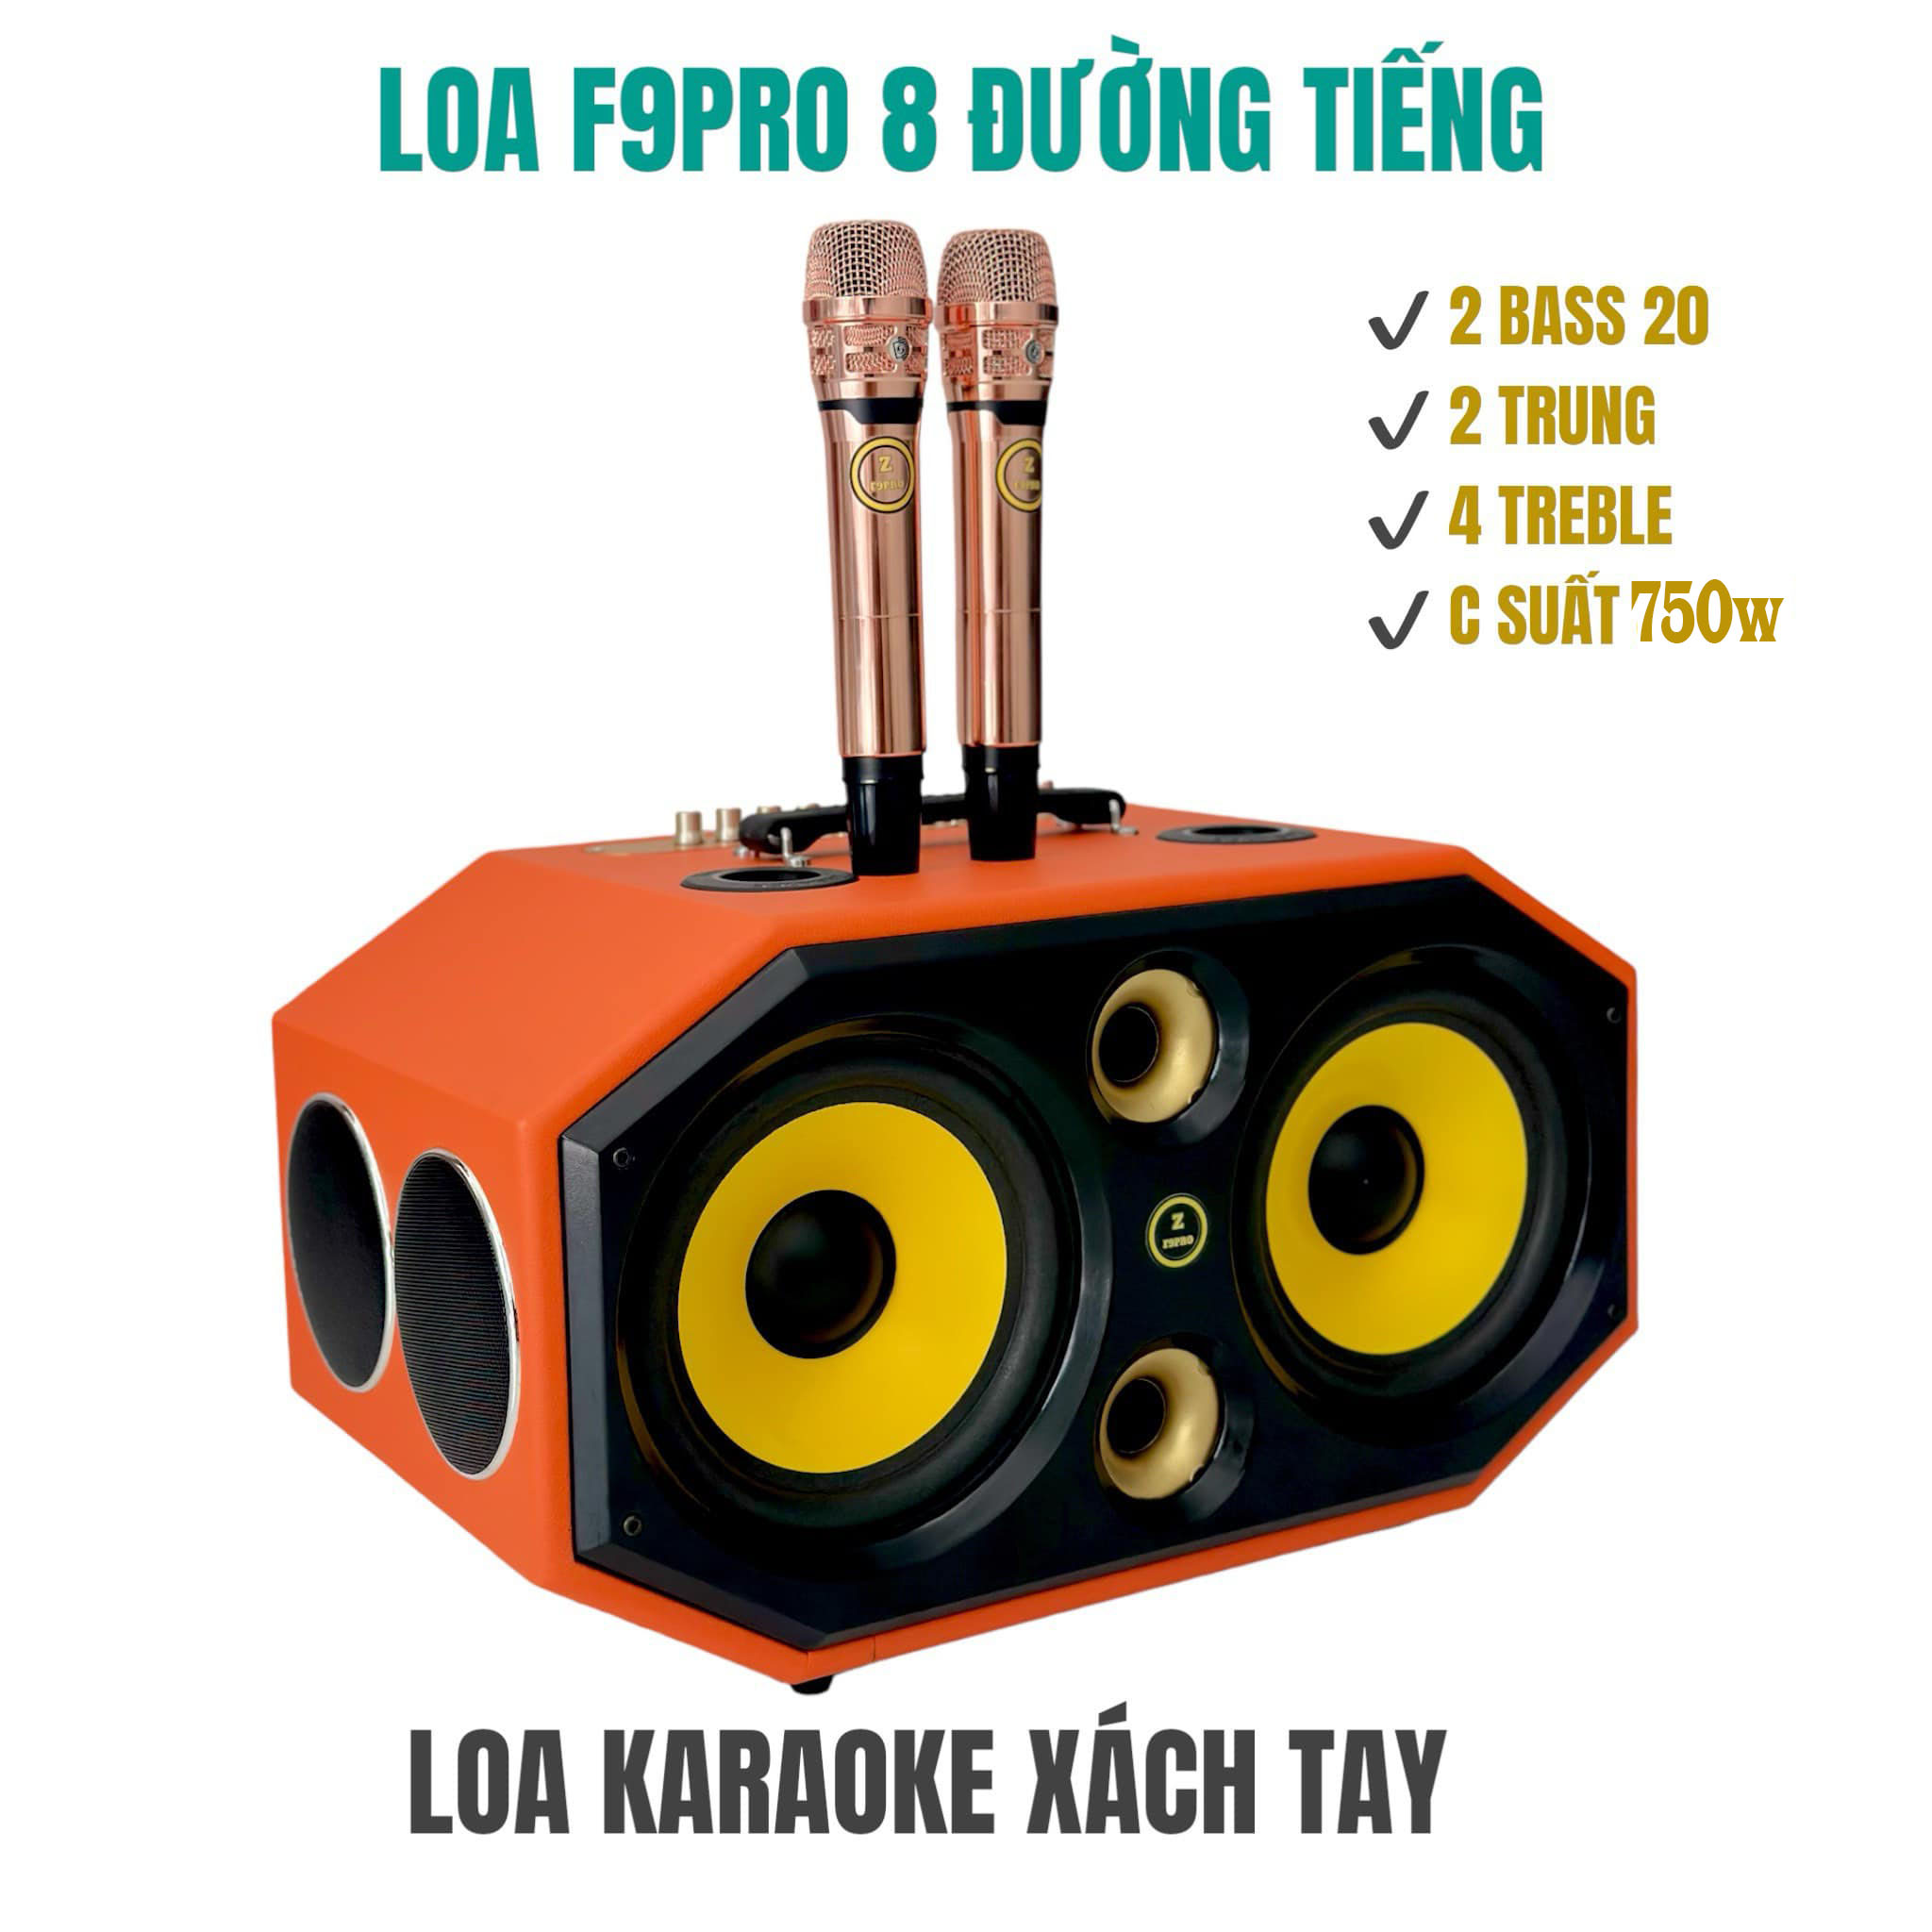 Top 5 Loa Bose Hát Karaoke Hot, Loa Bose F9 Pro Max 8 Đường Tiếng, Kết Nối Bluetooth Hiện Đại, Dễ Dàng Sử Dụng, Loa Vỏ Gỗ Bọc Da, Có Tay Xách Âm Thanh Khủng, Bảo Hành 1 Năm.